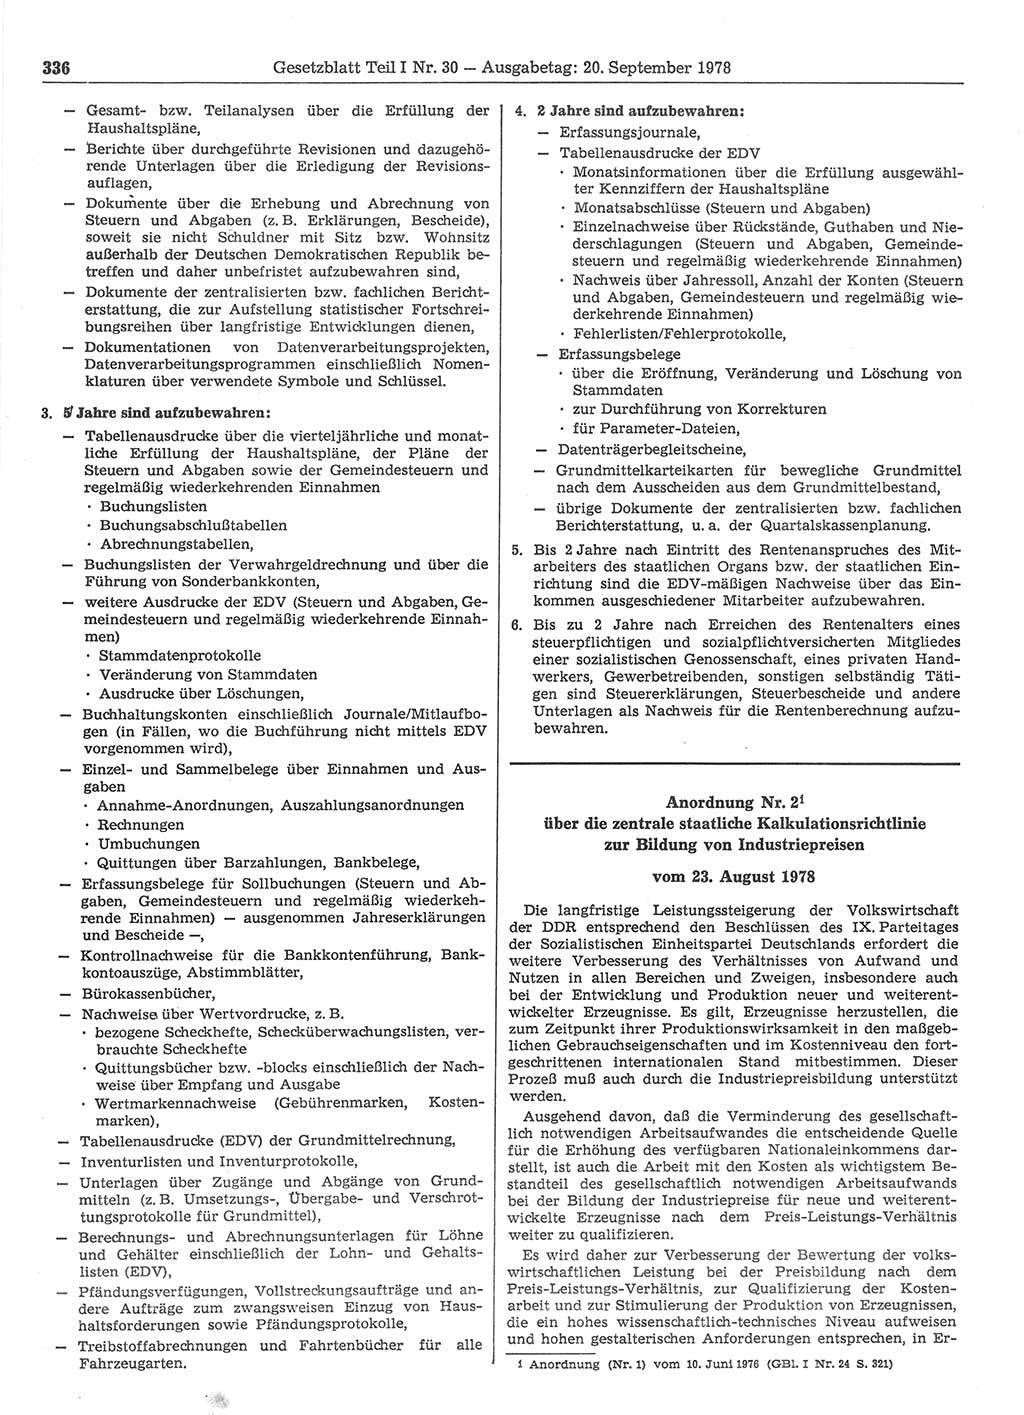 Gesetzblatt (GBl.) der Deutschen Demokratischen Republik (DDR) Teil Ⅰ 1978, Seite 336 (GBl. DDR Ⅰ 1978, S. 336)